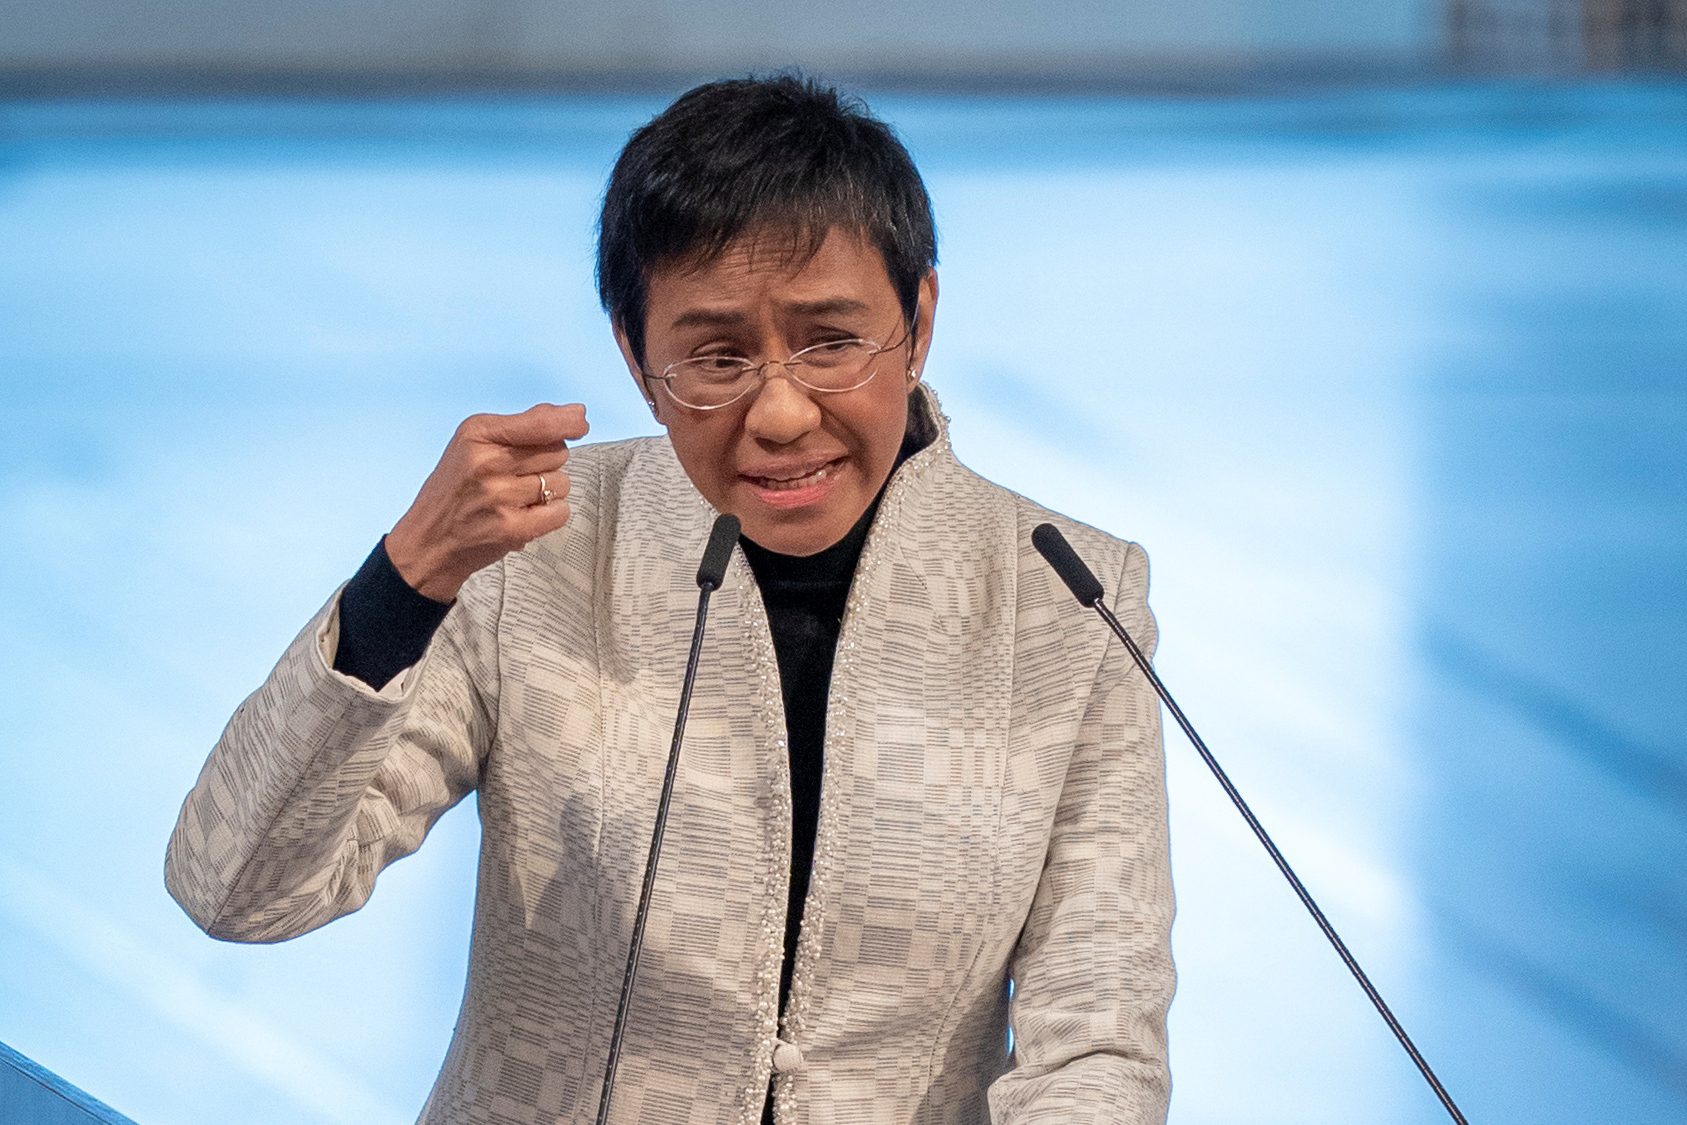 TEKSTO: Talumpati ni Maria Ressa sa pagpaparangal ng Nobel Peace Prize